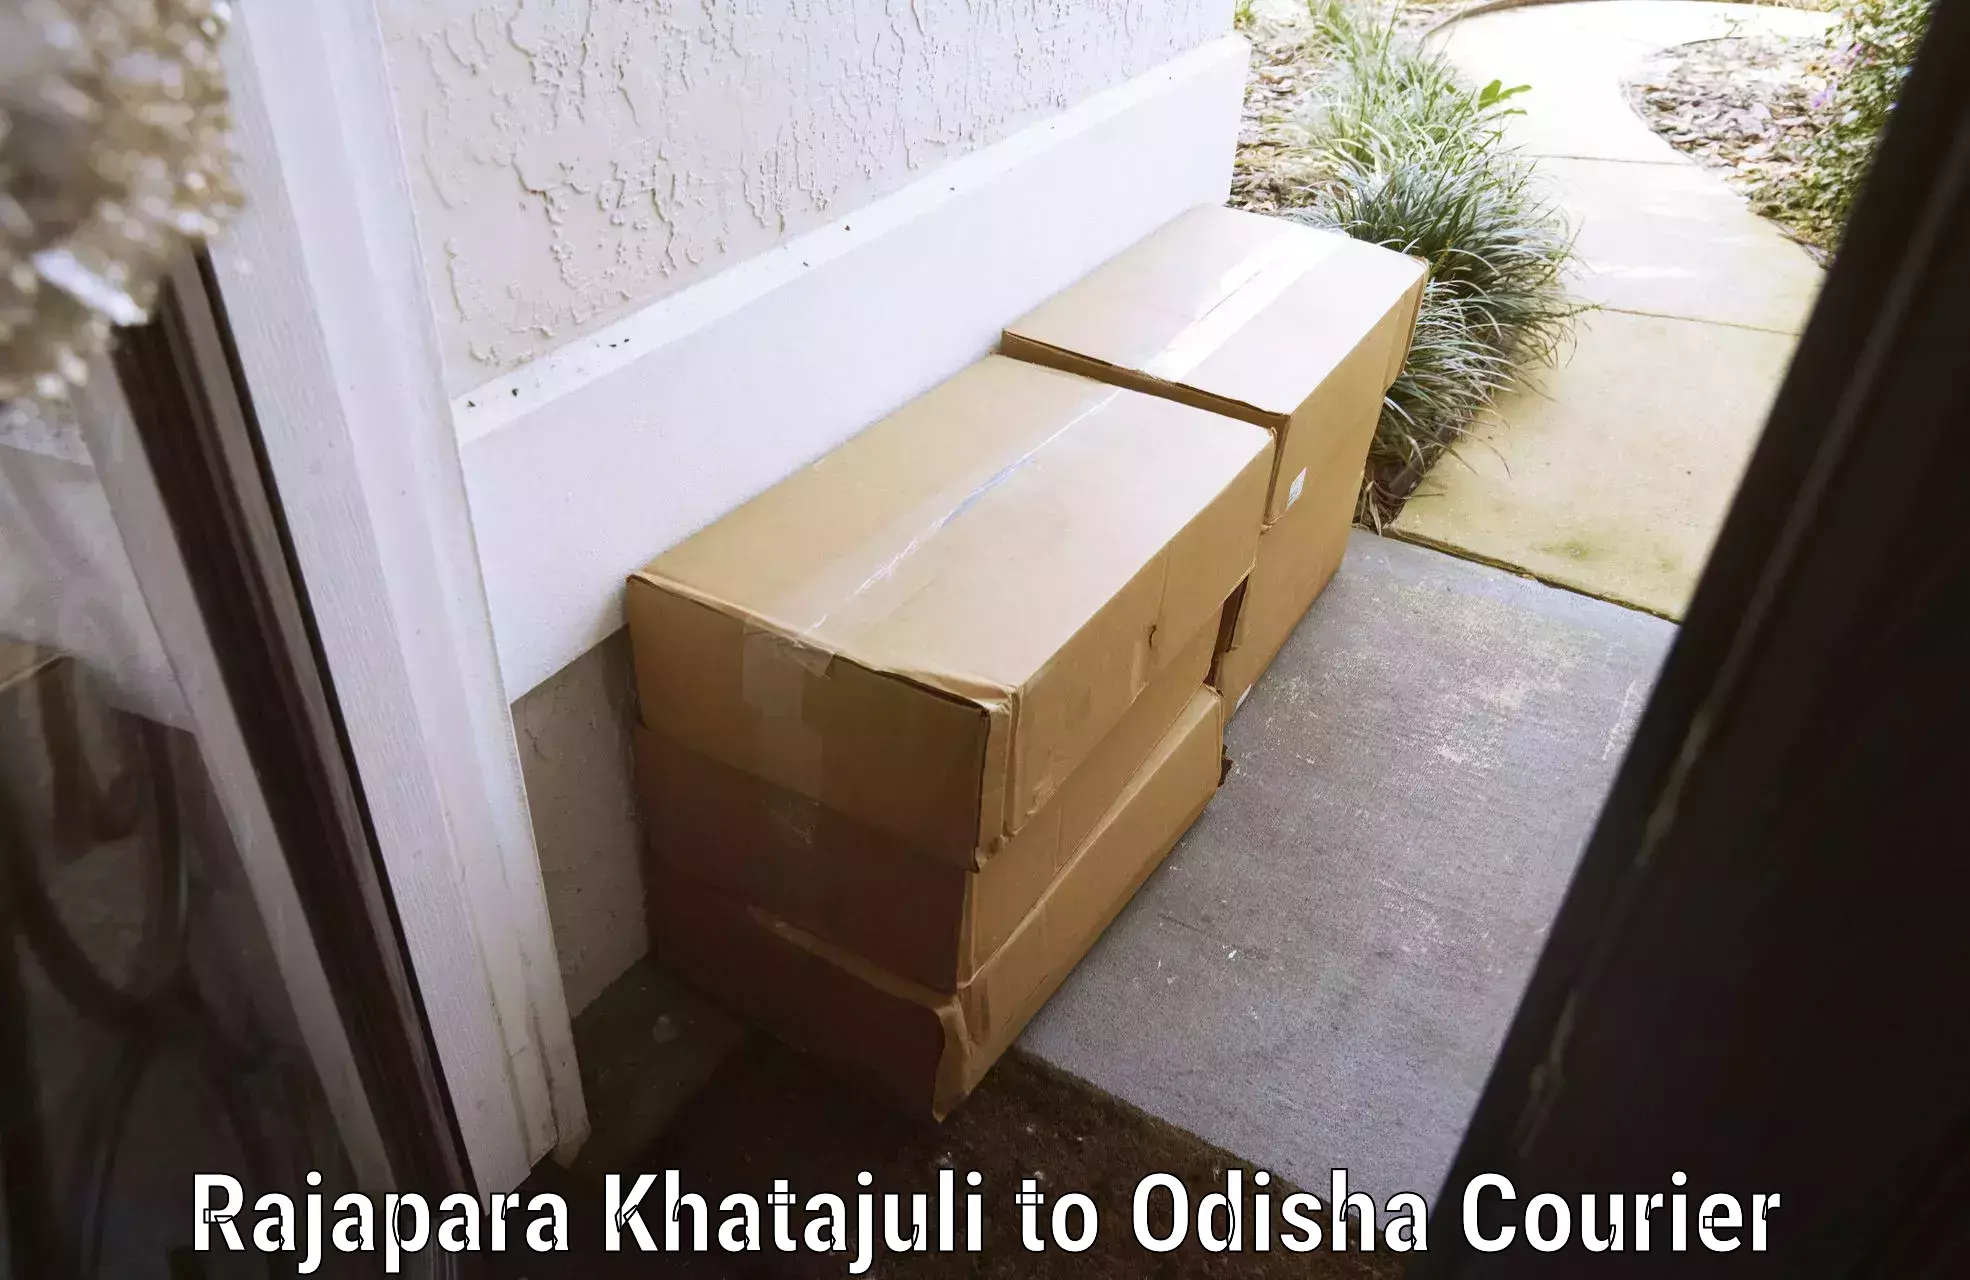 Luggage transport service Rajapara Khatajuli to Odisha